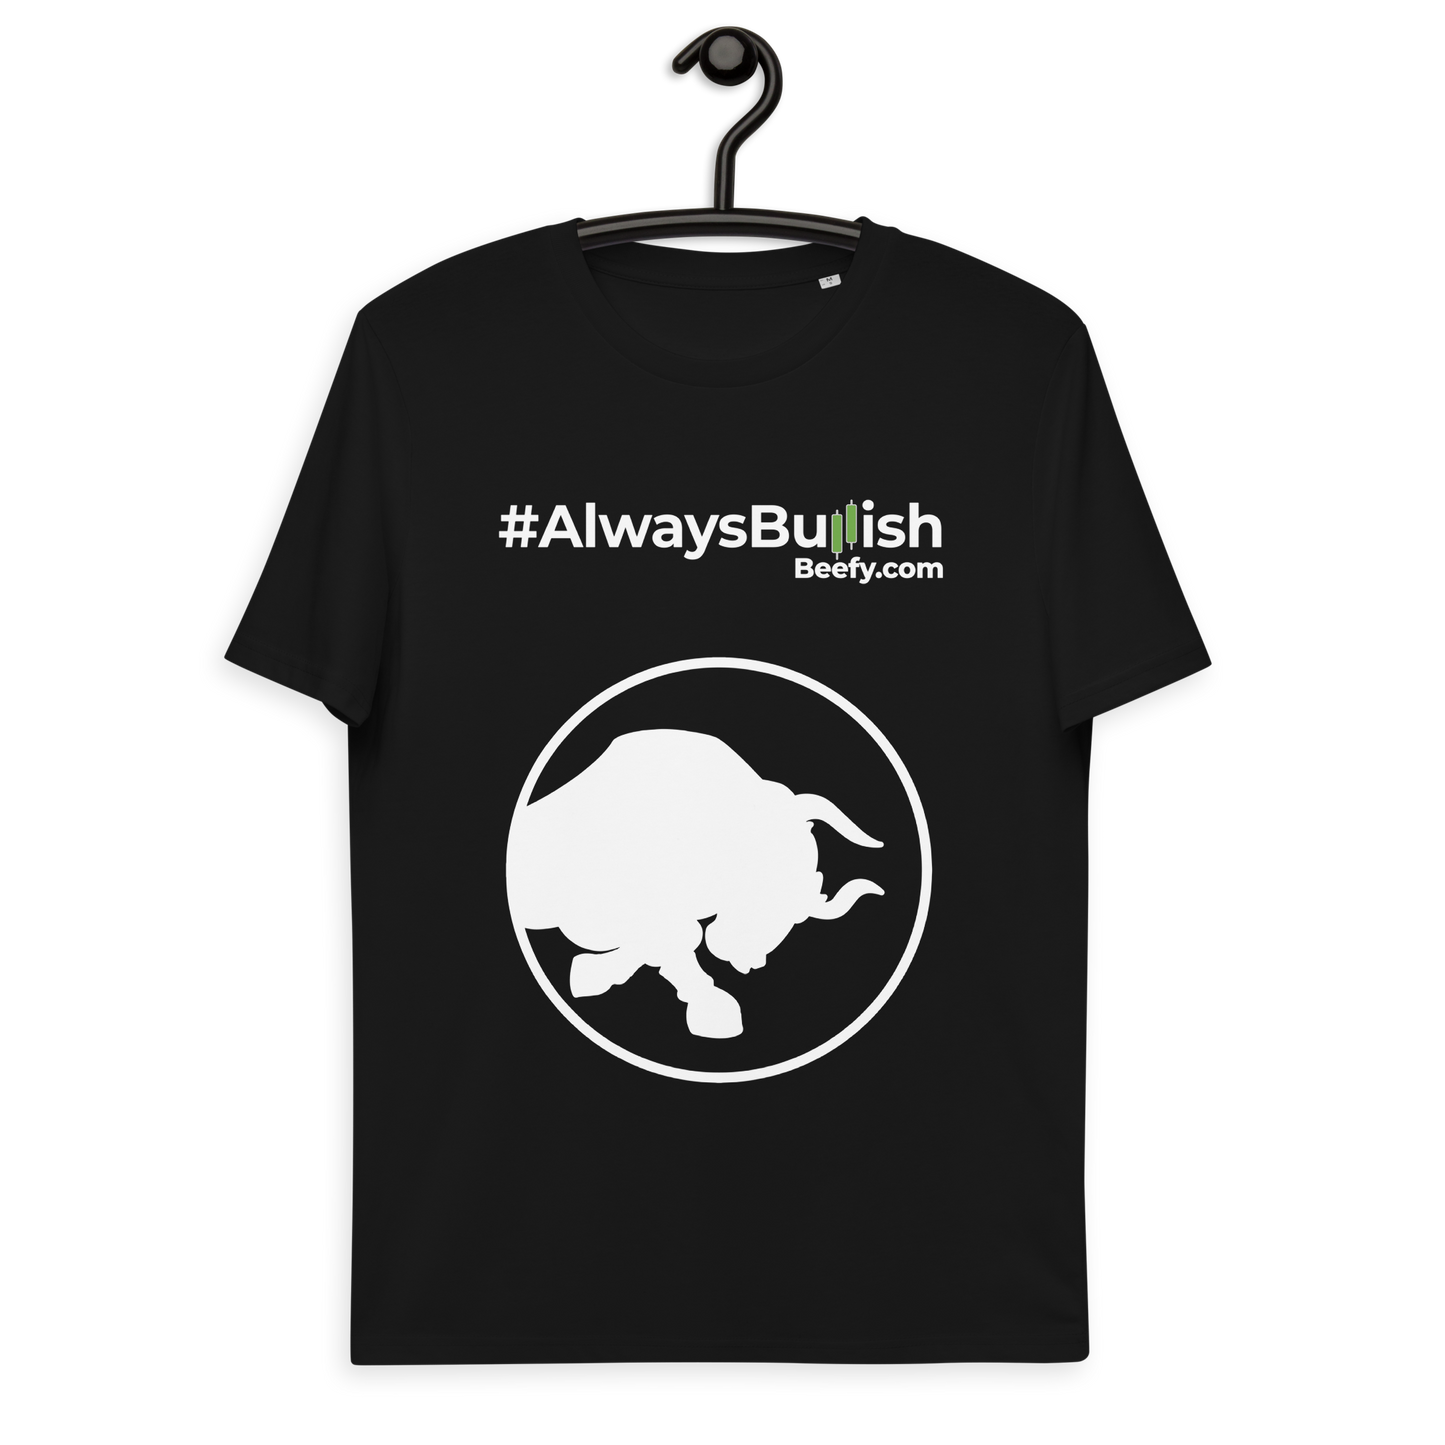 Always Bullish t-shirt